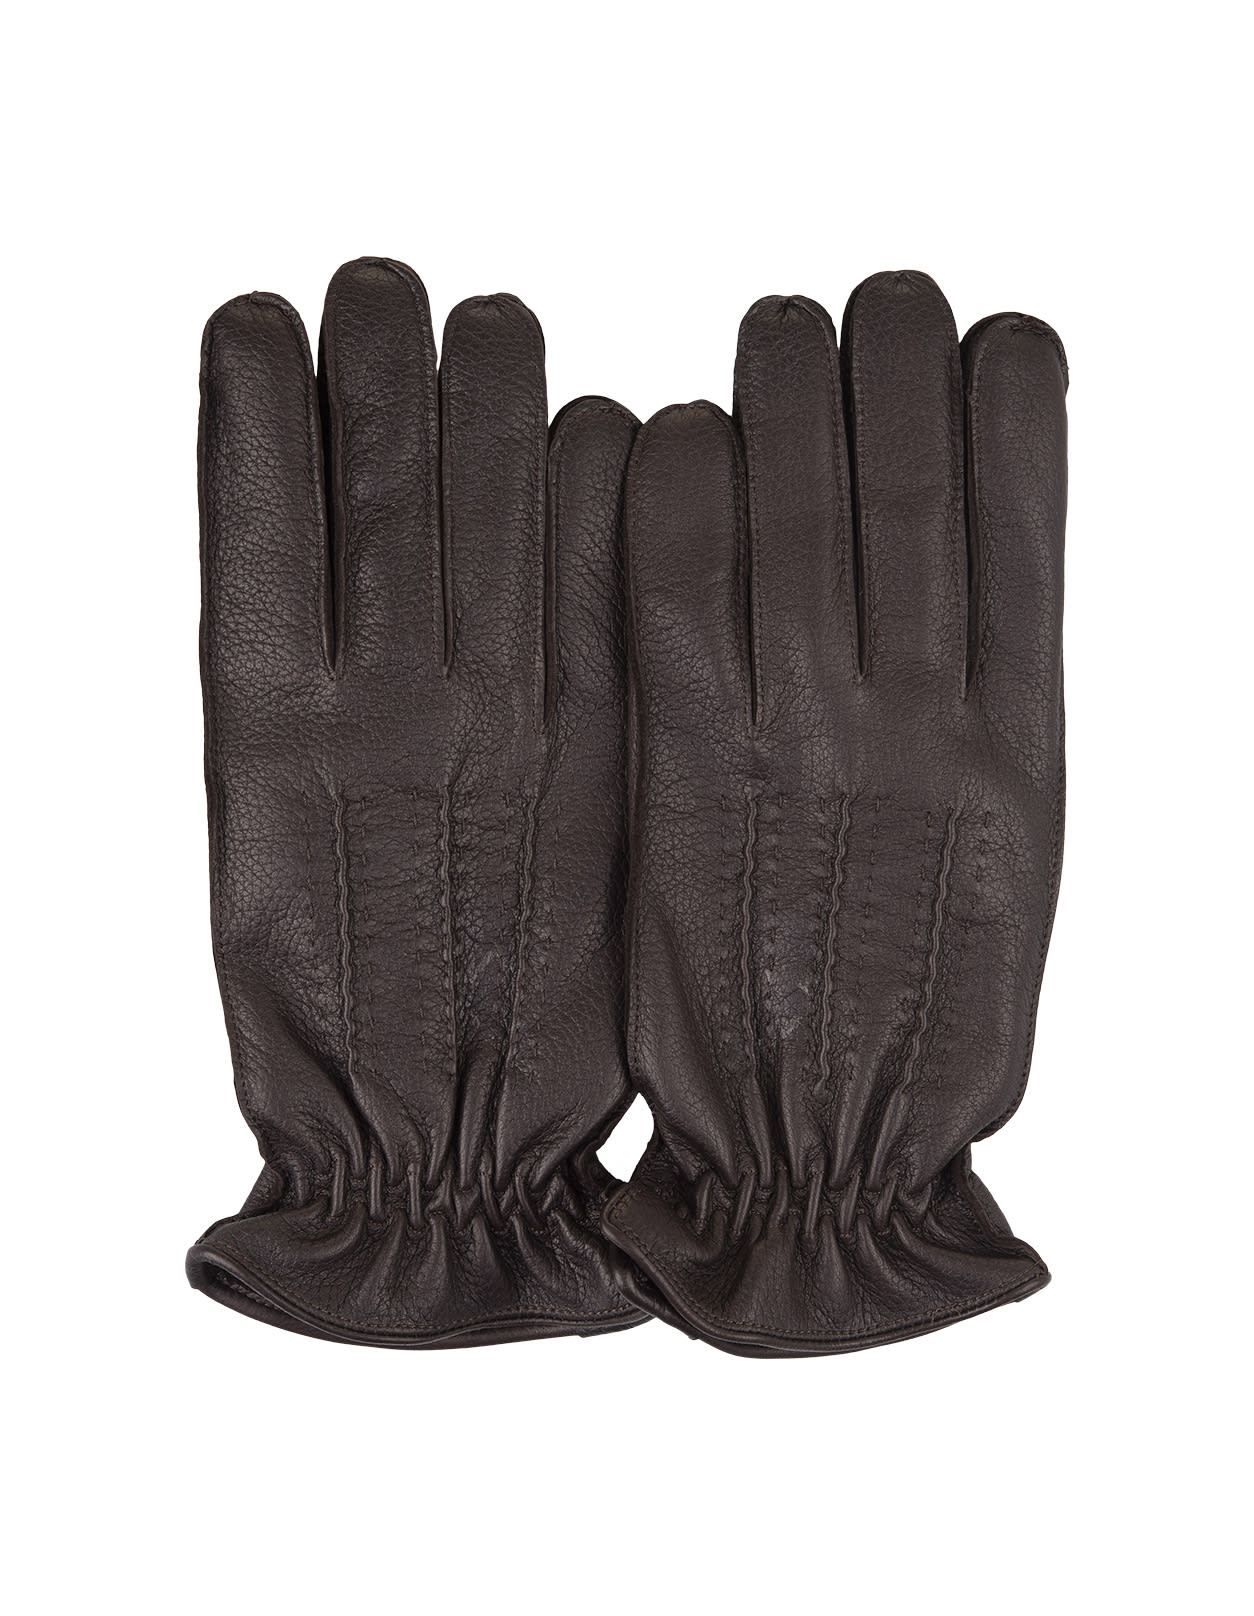 Drummed Gloves In Dark Brown Leather